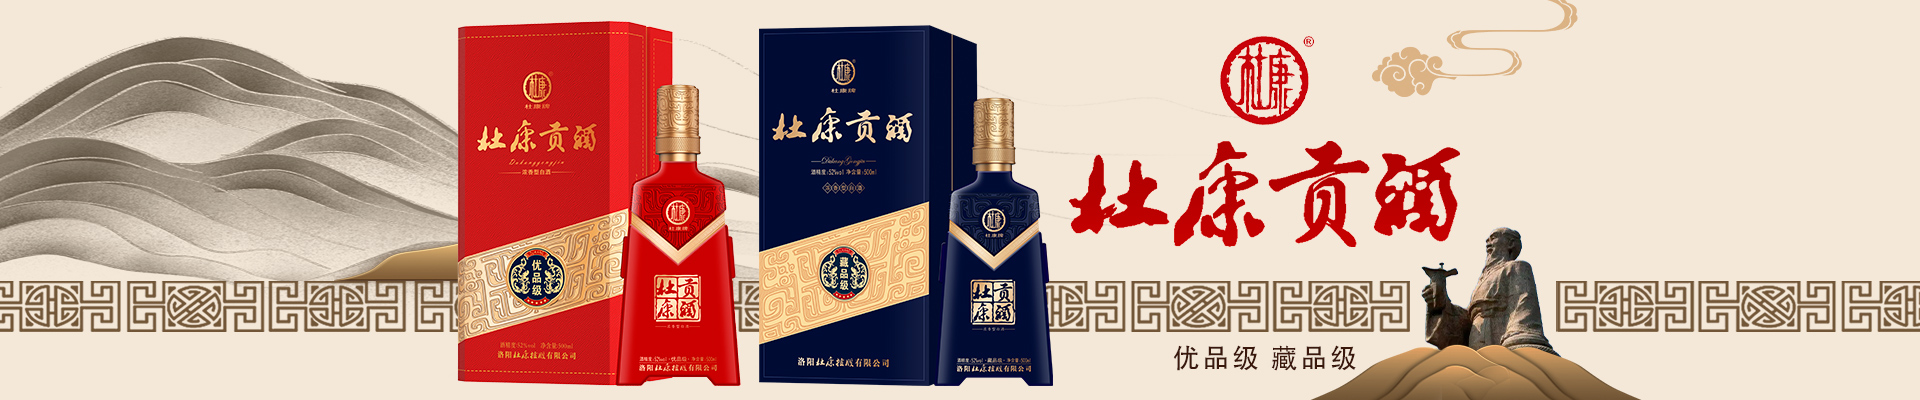 河南省仟悦酒业有限公司